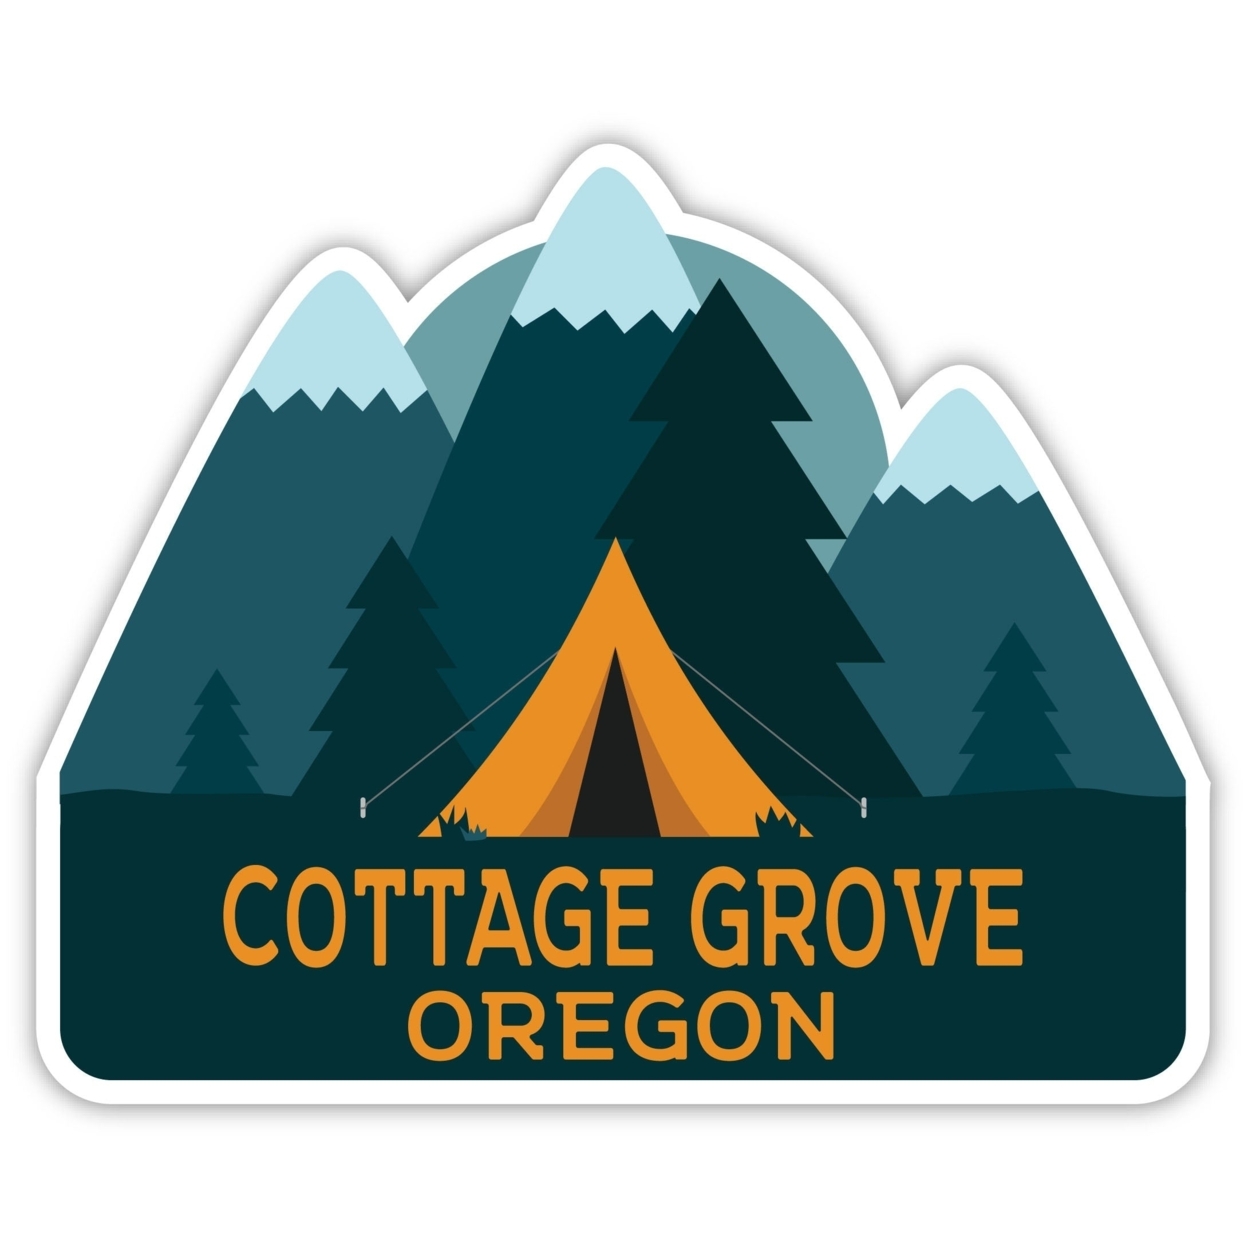 Cottage Grove Oregon Souvenir Decorative Stickers (Choose Theme And Size) - Single Unit, 12-Inch, Tent